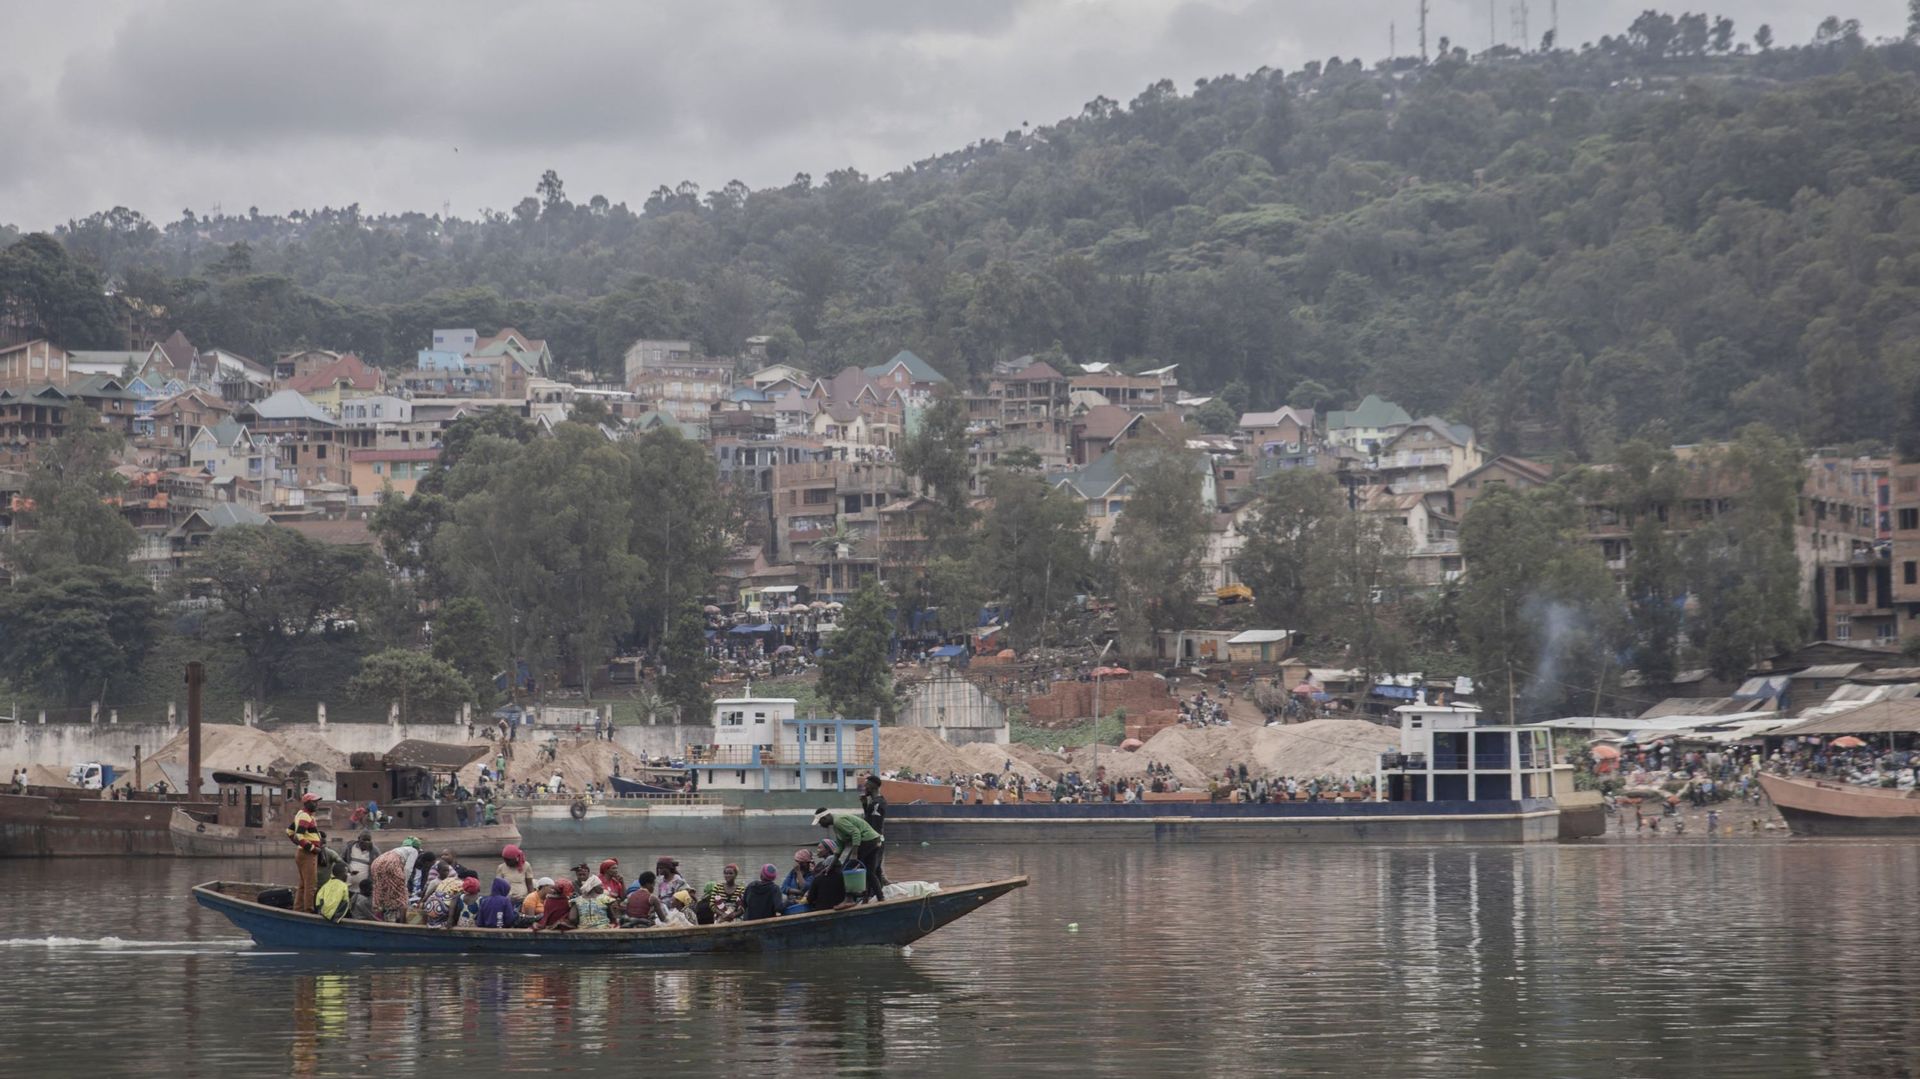 Image d'illustration - Un bateau transporte des voyageurs sur le lac Kivu de Bukavu à Idjwi, le 5 novembre 2021.